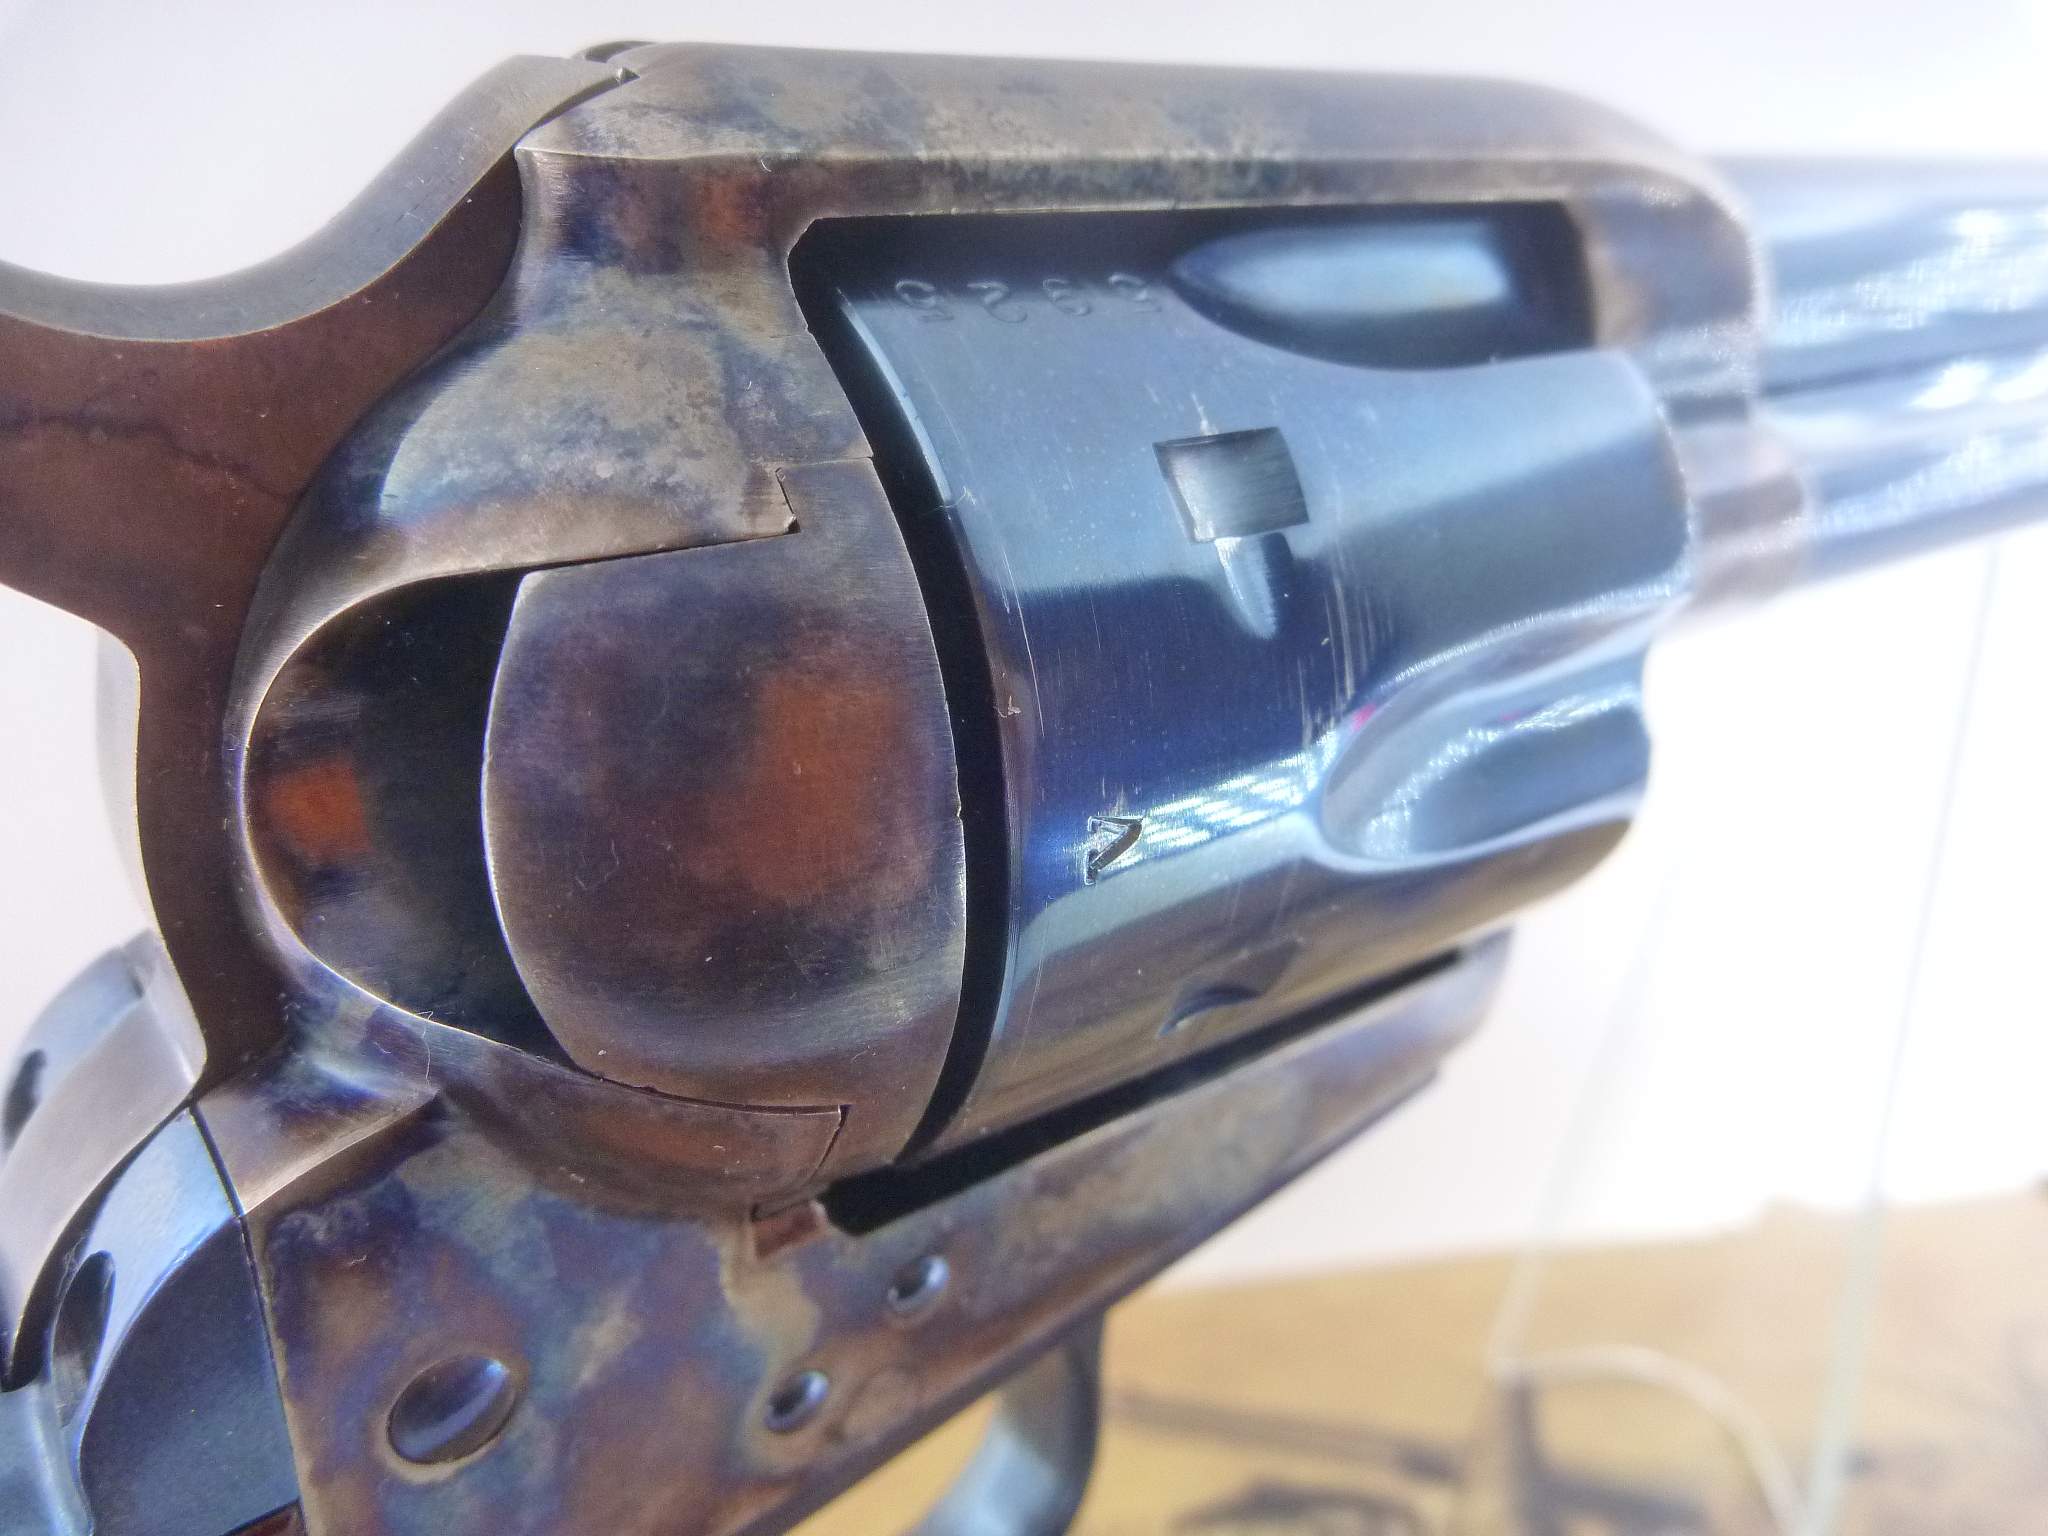 Revolver Uberti / Cimarron "7e de Cavalerie", cal. .45 Colt